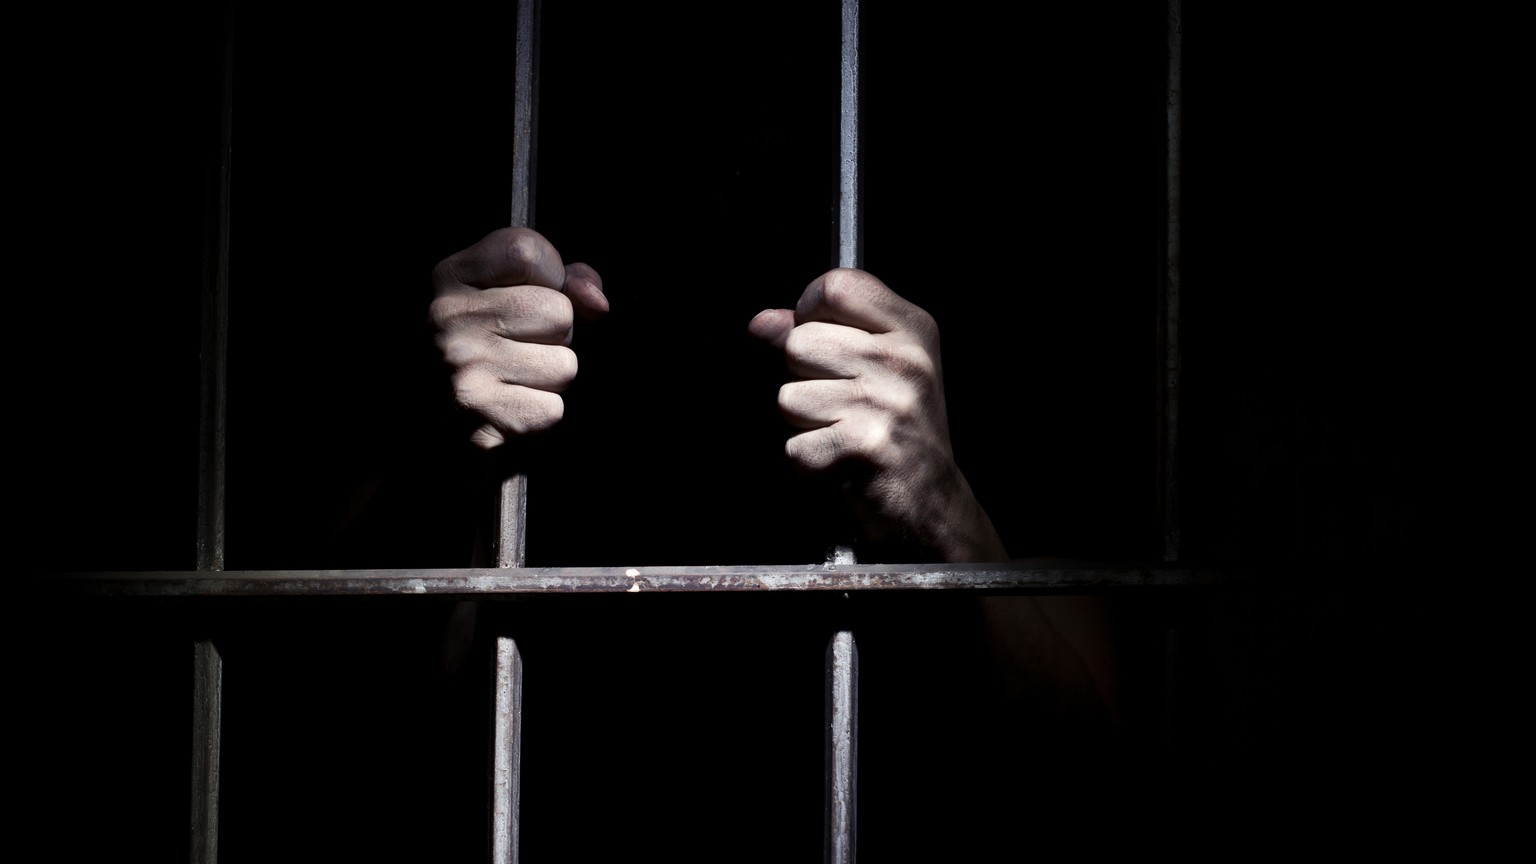 wieder mehr inhaftierte – schweizer gefängnisse so voll wie seit 10 jahren nicht mehr